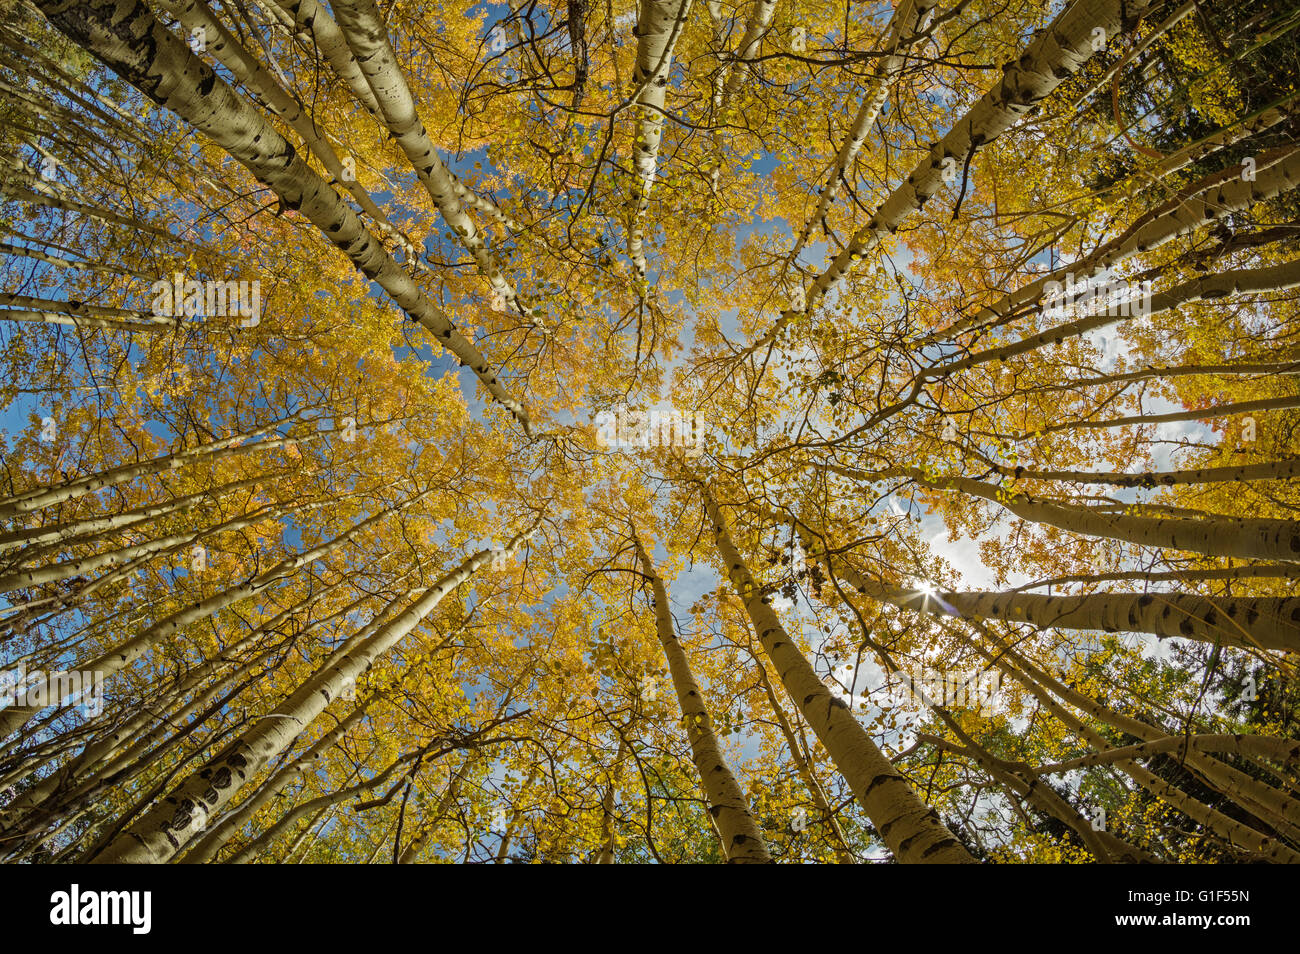 Vue grand angle jusqu'à la cime des arbres en arbres de peuplier à l'automne avec le feuillage jaune vif Banque D'Images